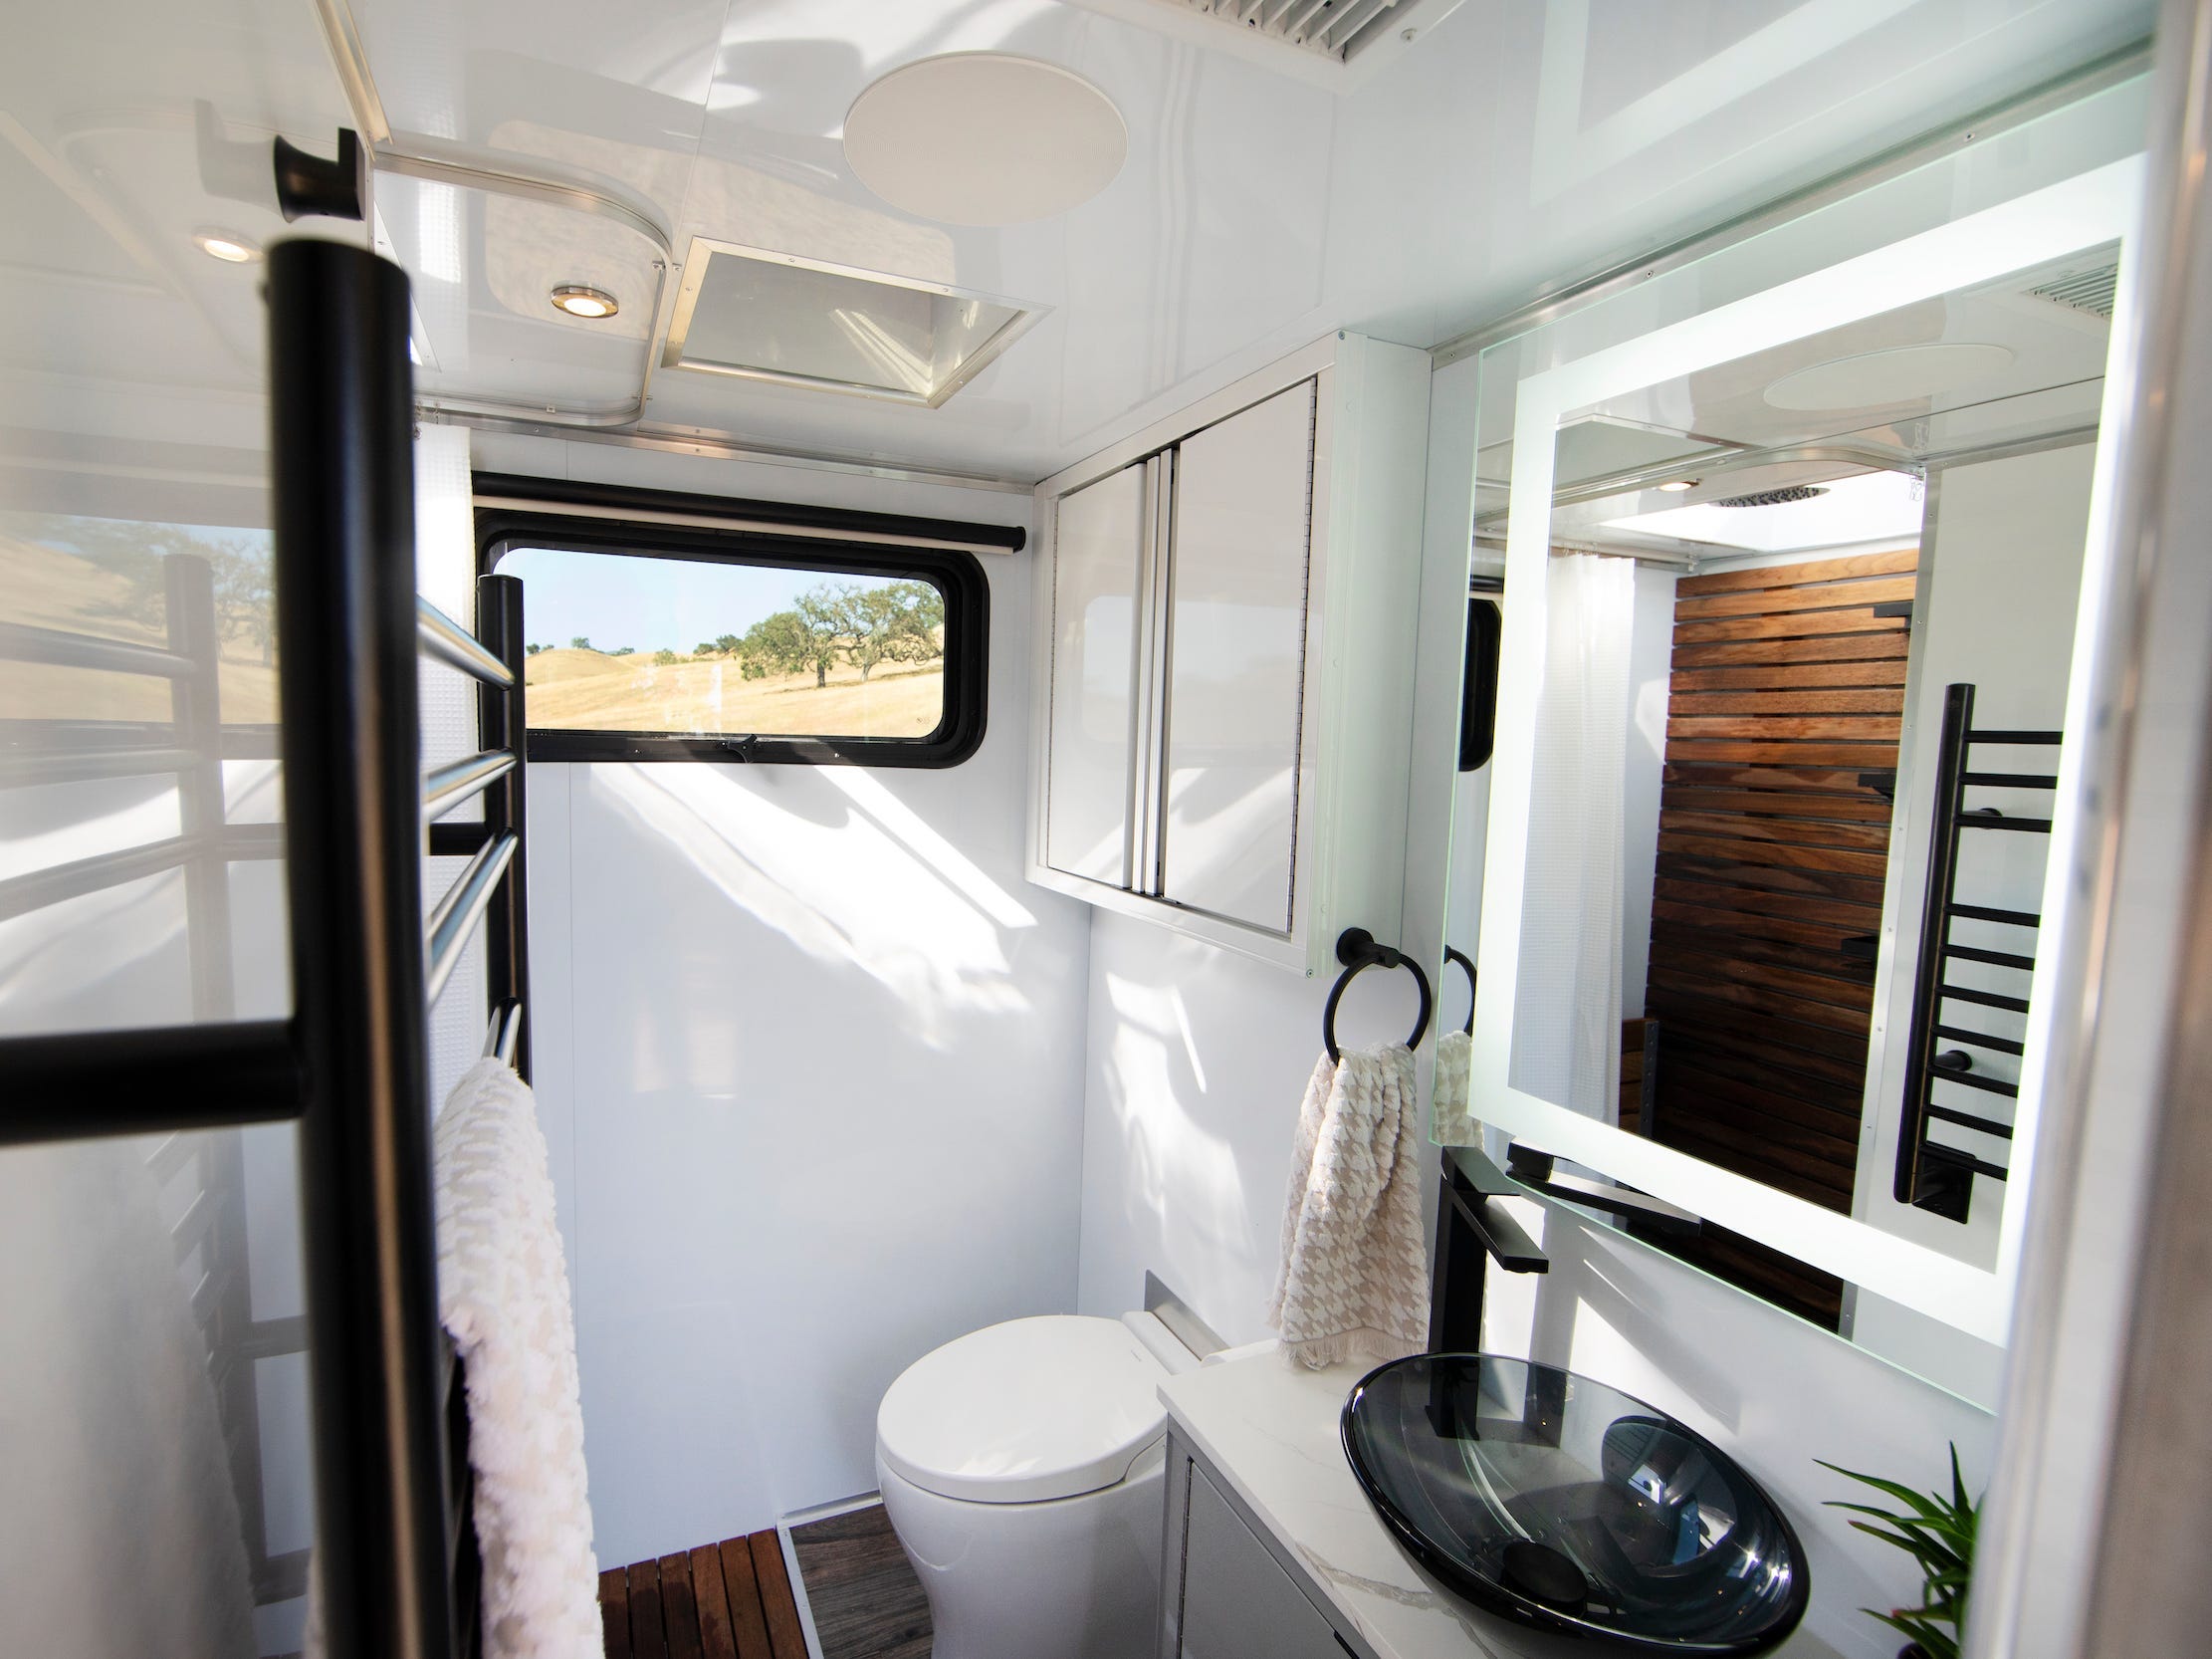 Een badkamer met een raam, handdoekenrek, spiegel, wastafel, toilet.